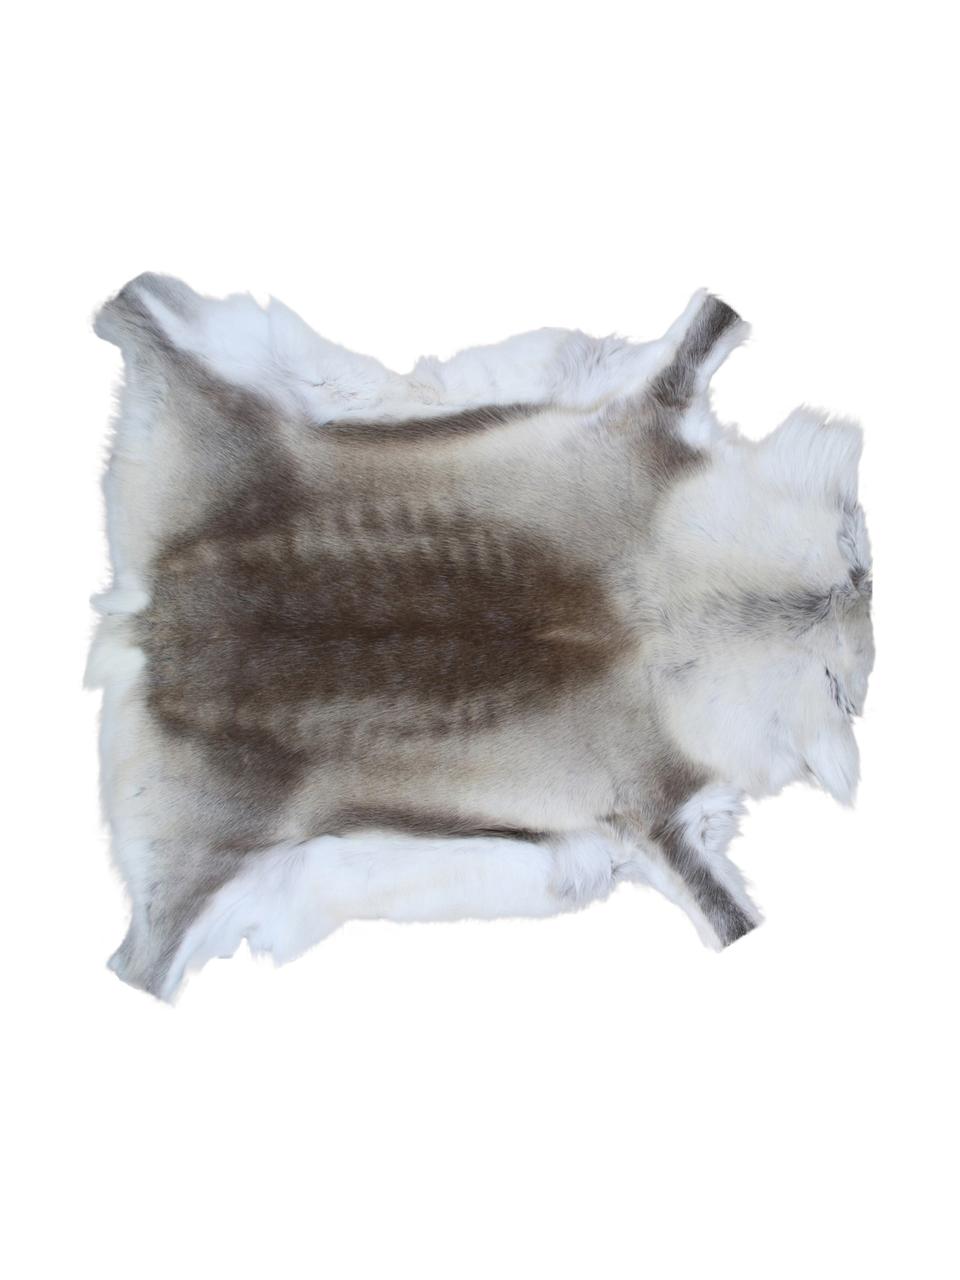 Dywan ze skóry renifera Marlen, Skóra renifera, Odcienie brązowego, biały, Unikatowa skóra z renifera 141, 75 x 115 cm